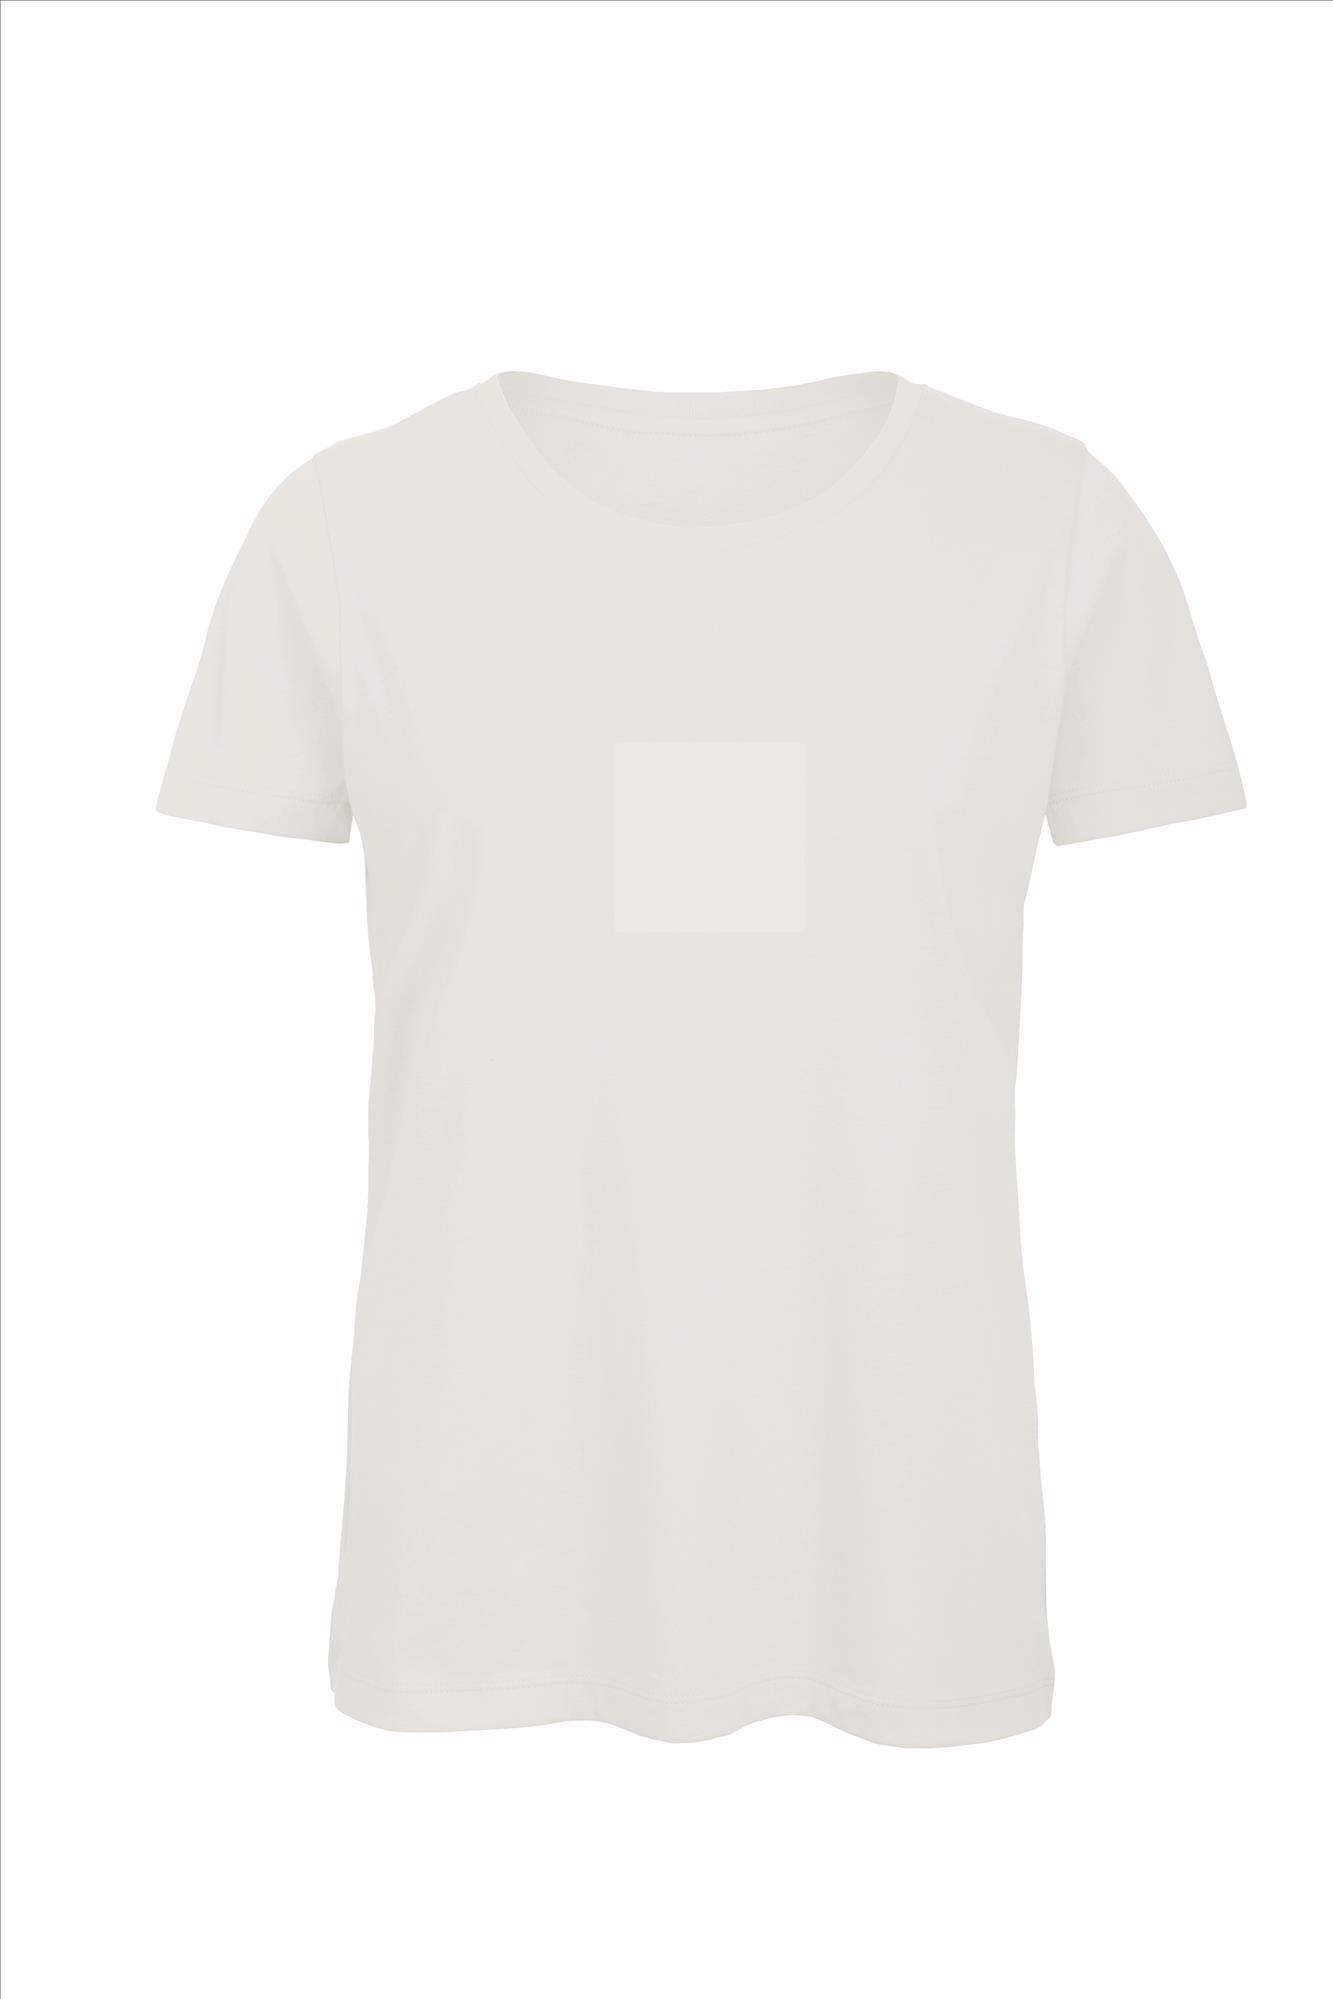 Biologische dames T-shirt wit te personaliseren bedrukbaar